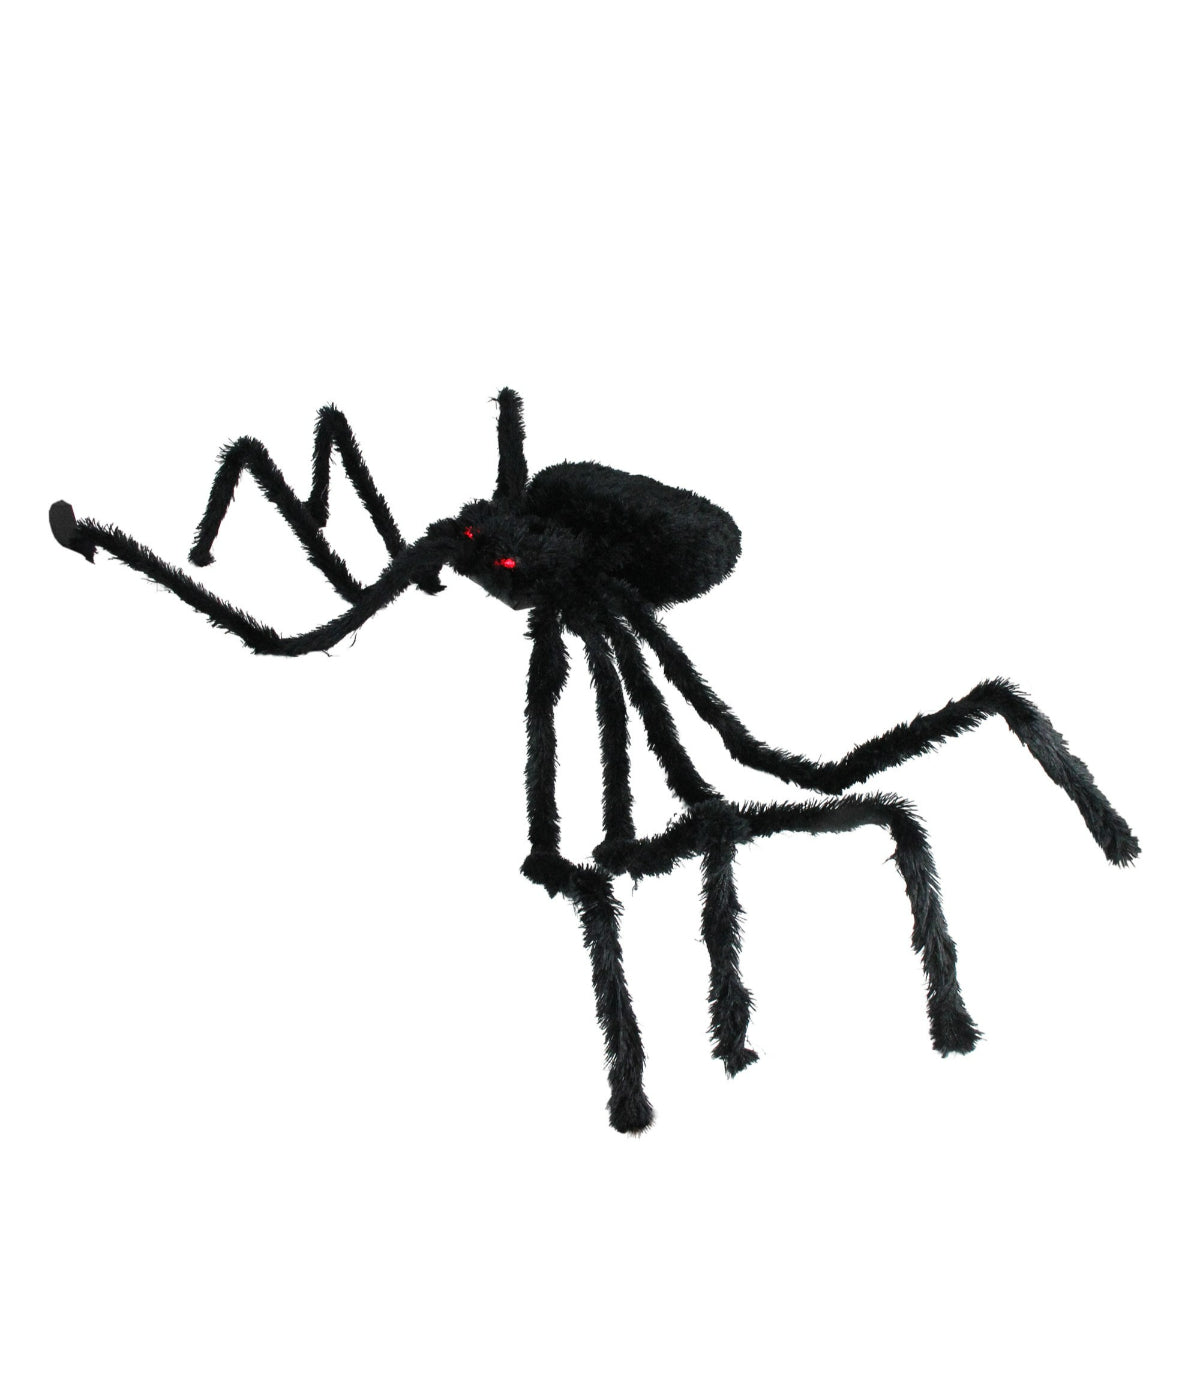 Pre-Lit Black Spider Halloween Decoration